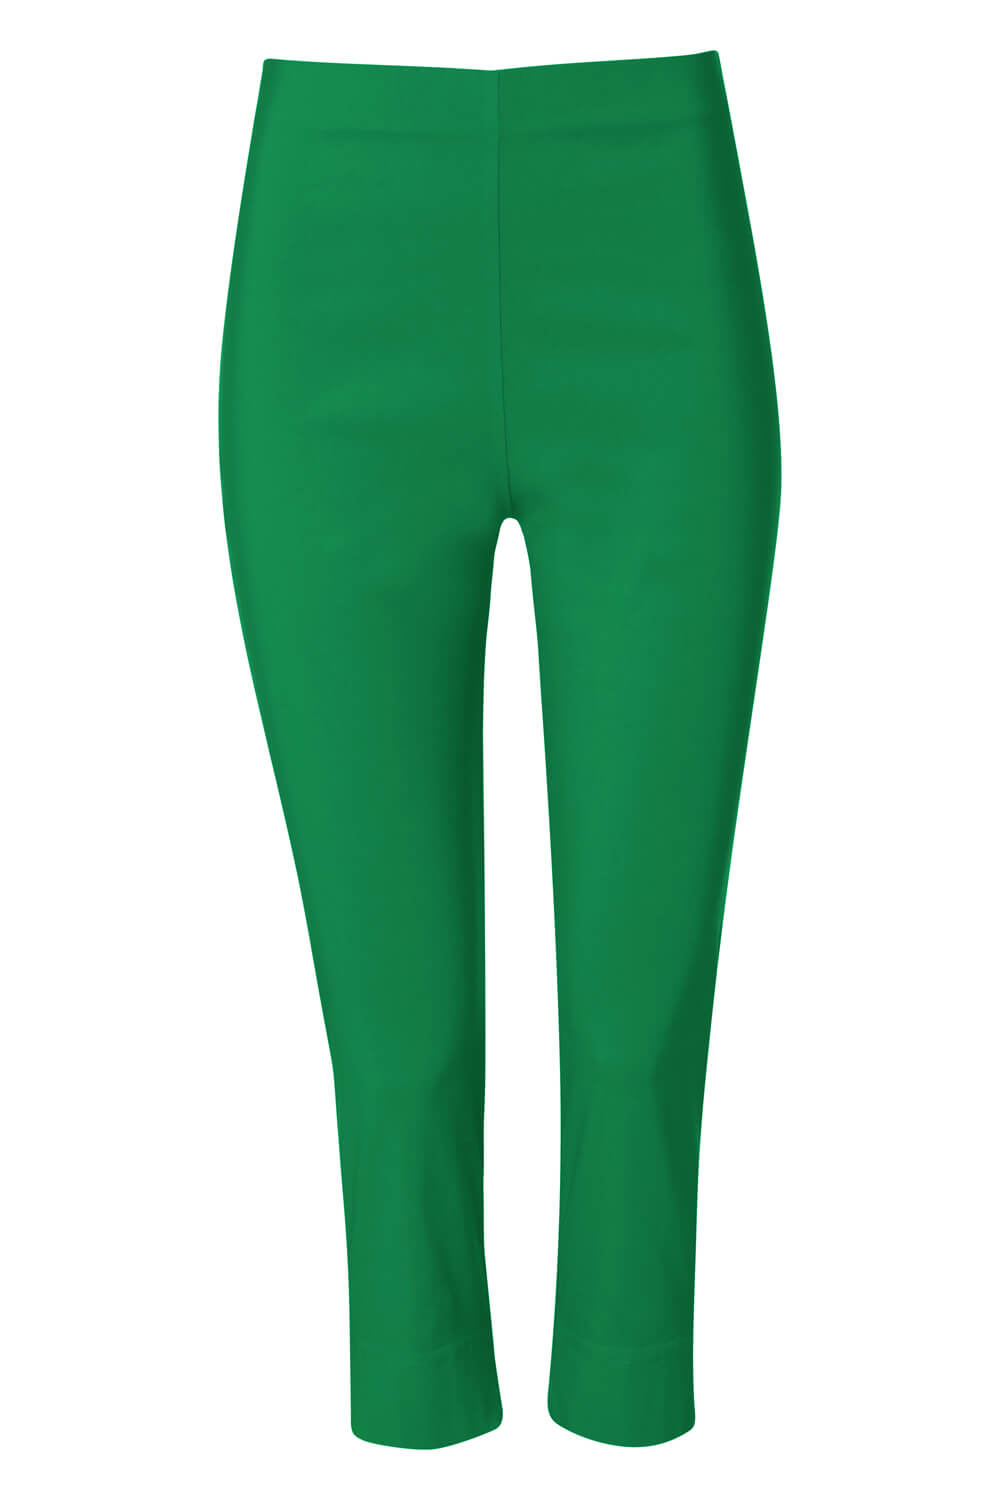 Cropped Stretch Trouser in Emerald Green - Roman Originals UK